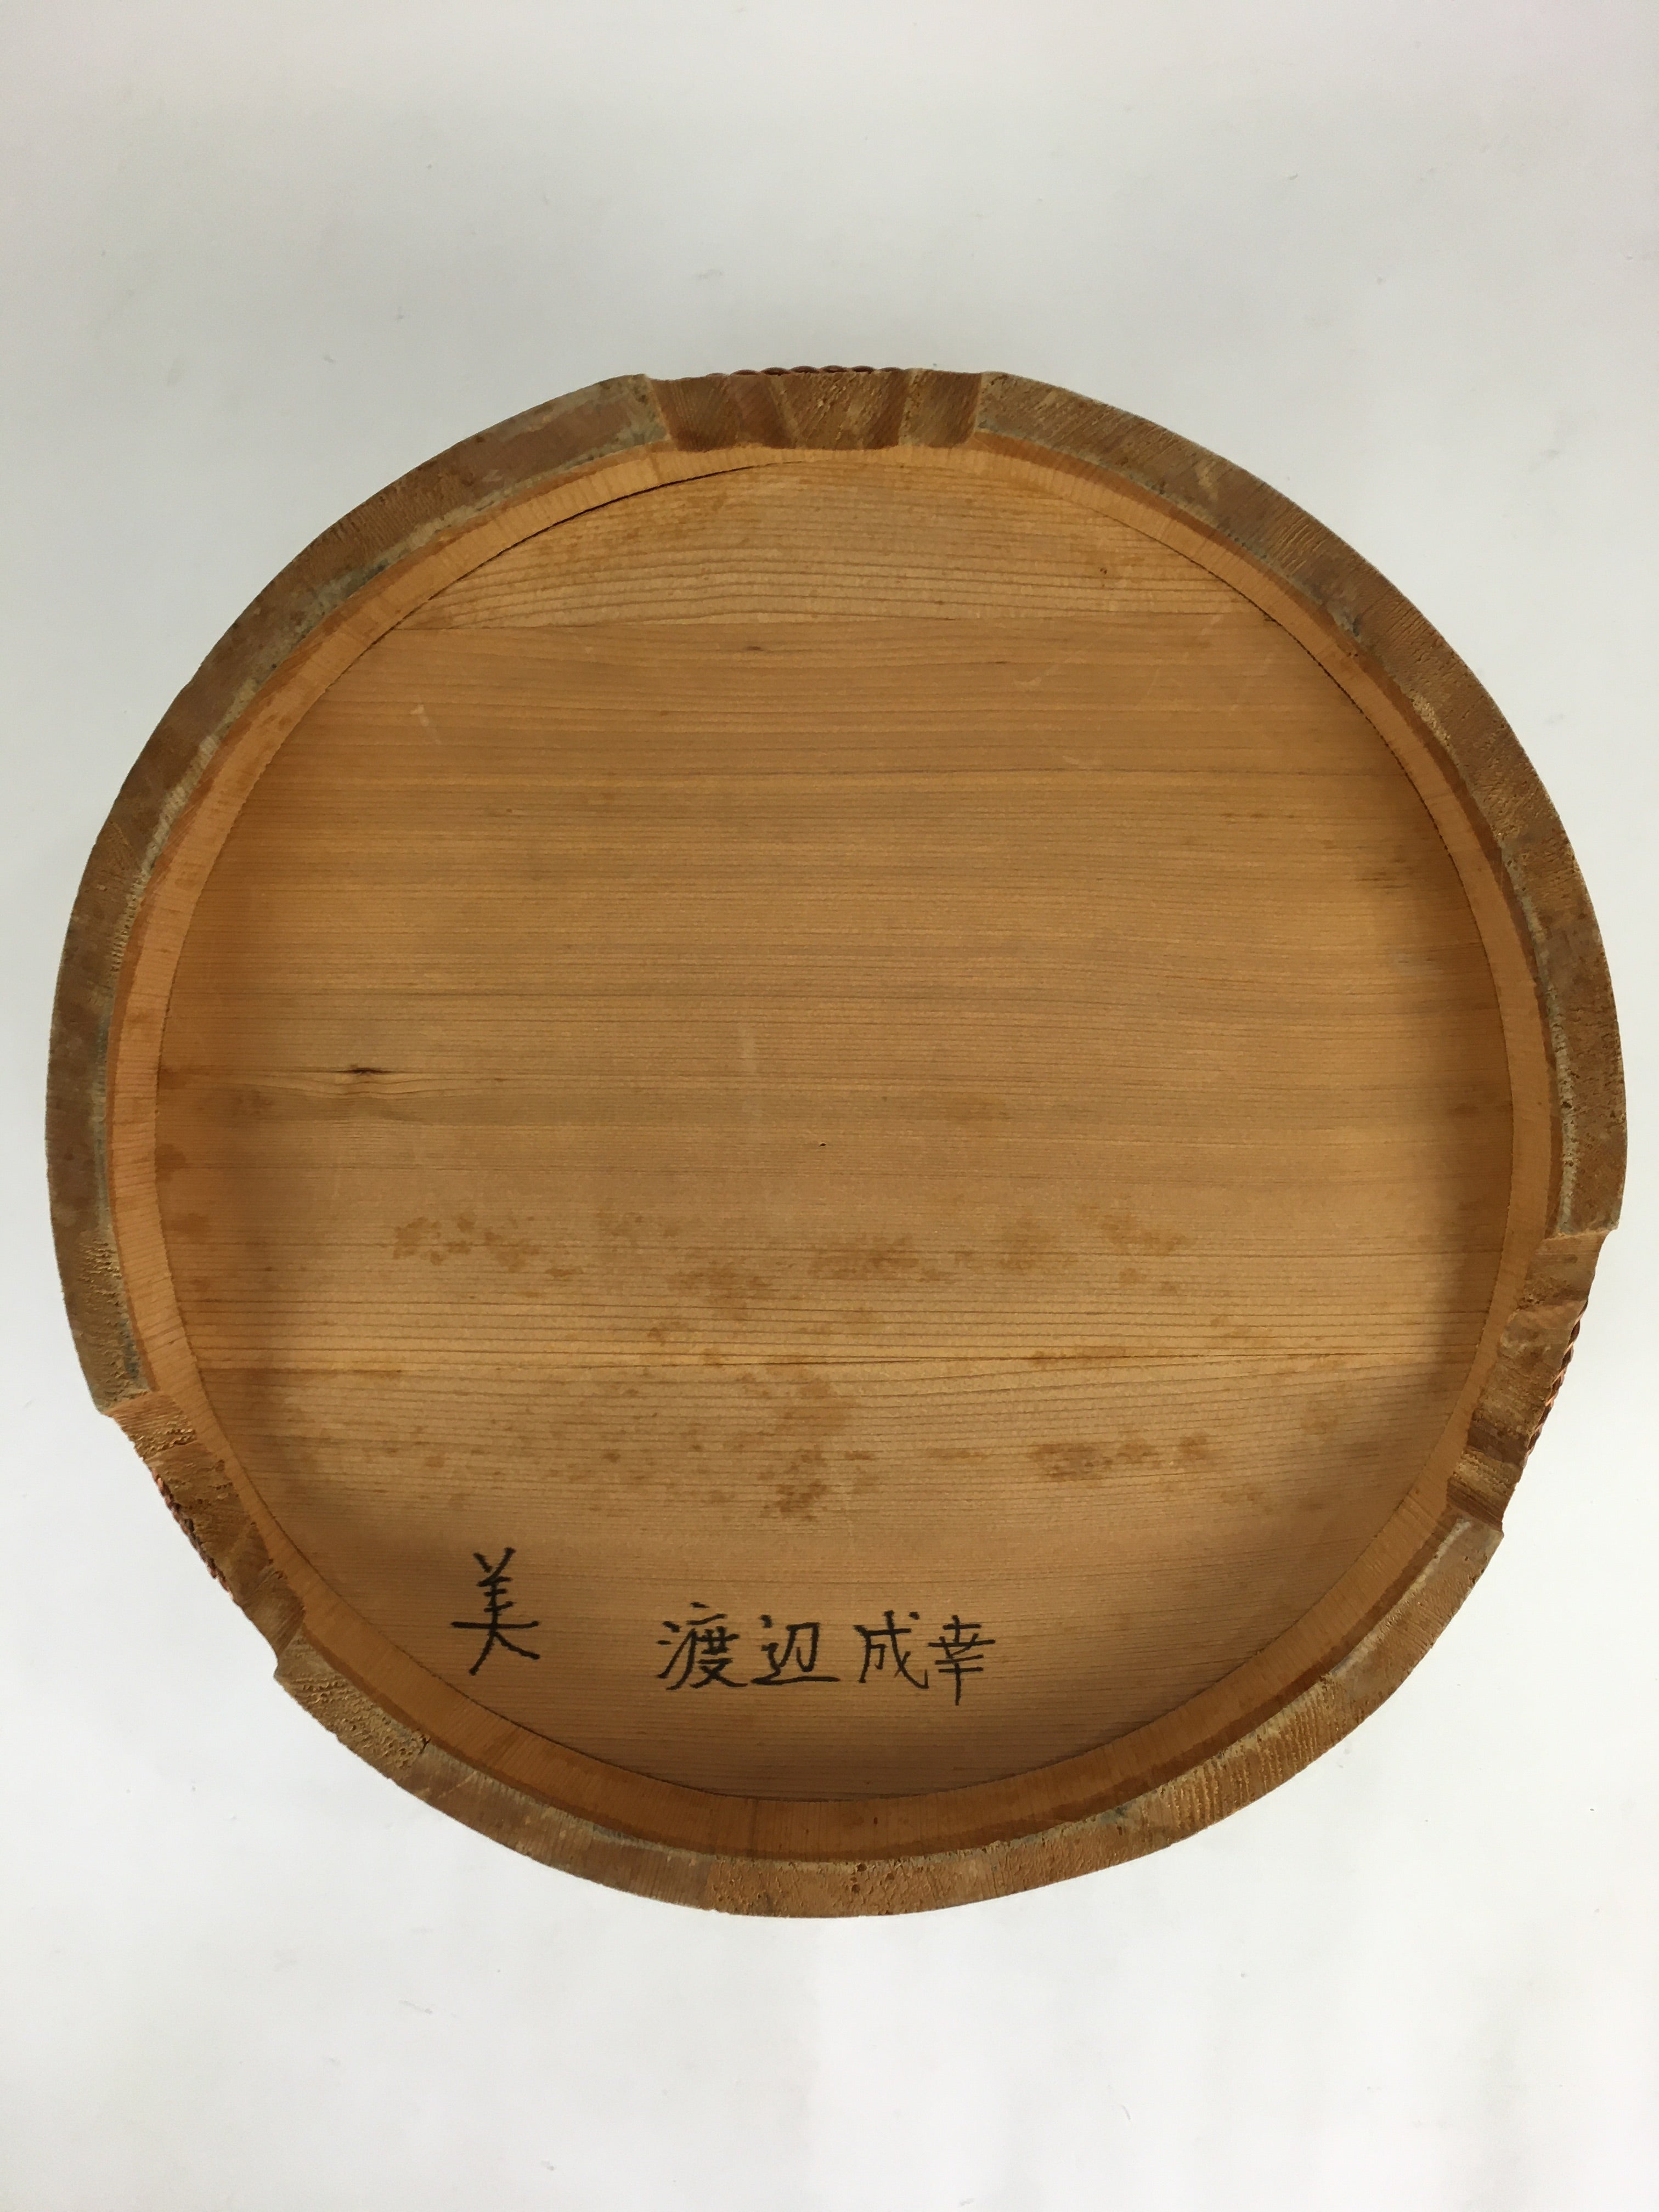 Japanese Handmade Wooden Oke Bucket Vtg Water Rice JK292